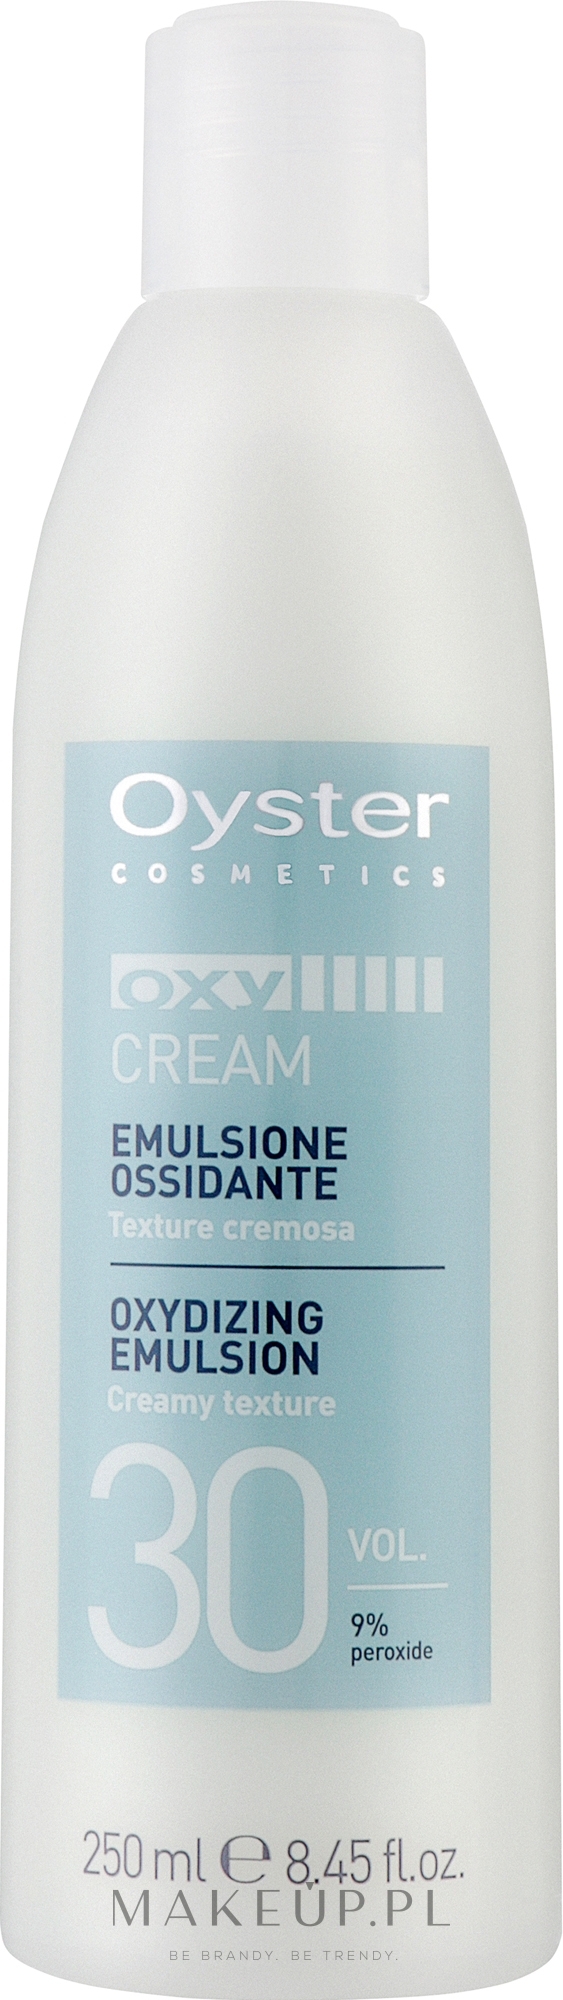 Utleniacz 30 vol. 9% - Oyster Cosmetics Oxy Cream Oxydant — Zdjęcie 250 ml